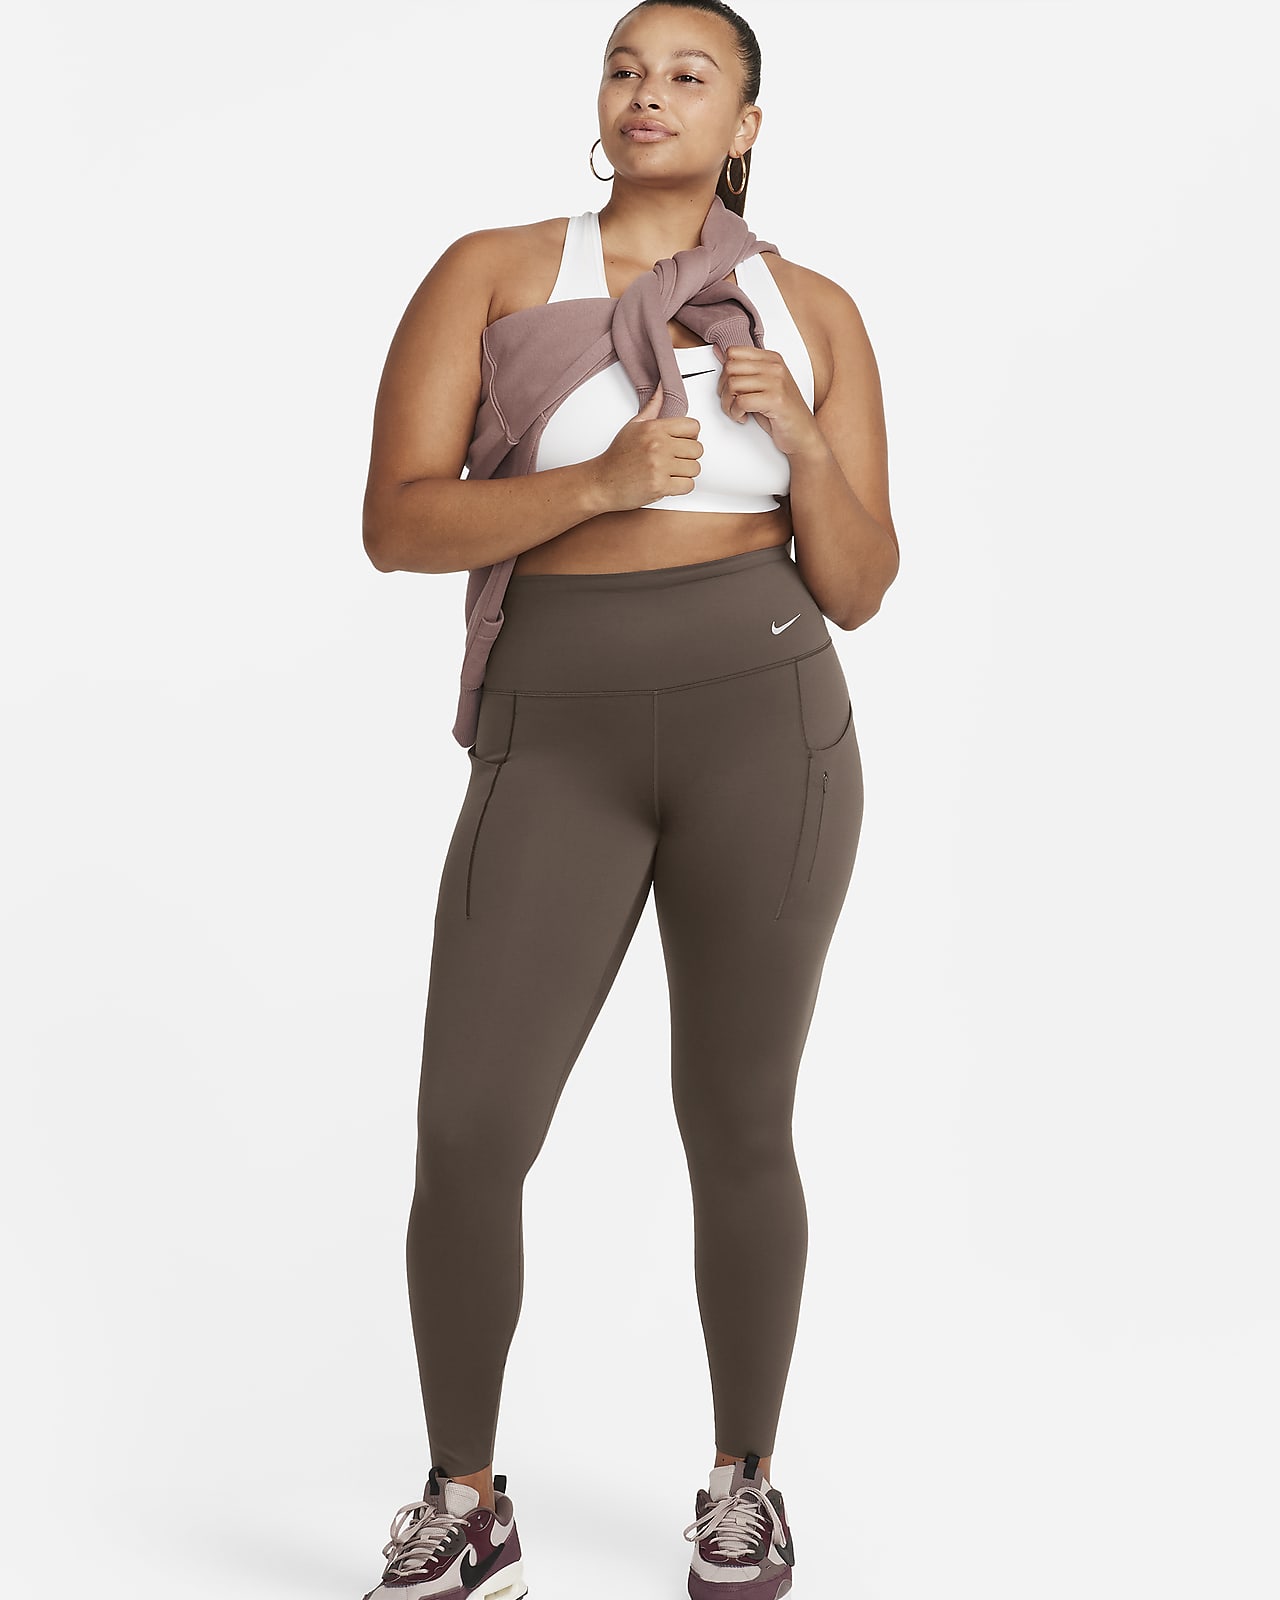 Γυναικείο ψηλόμεσο κολάν σε κανονικό μήκος με σταθερή στήριξη και τσέπες Nike Go